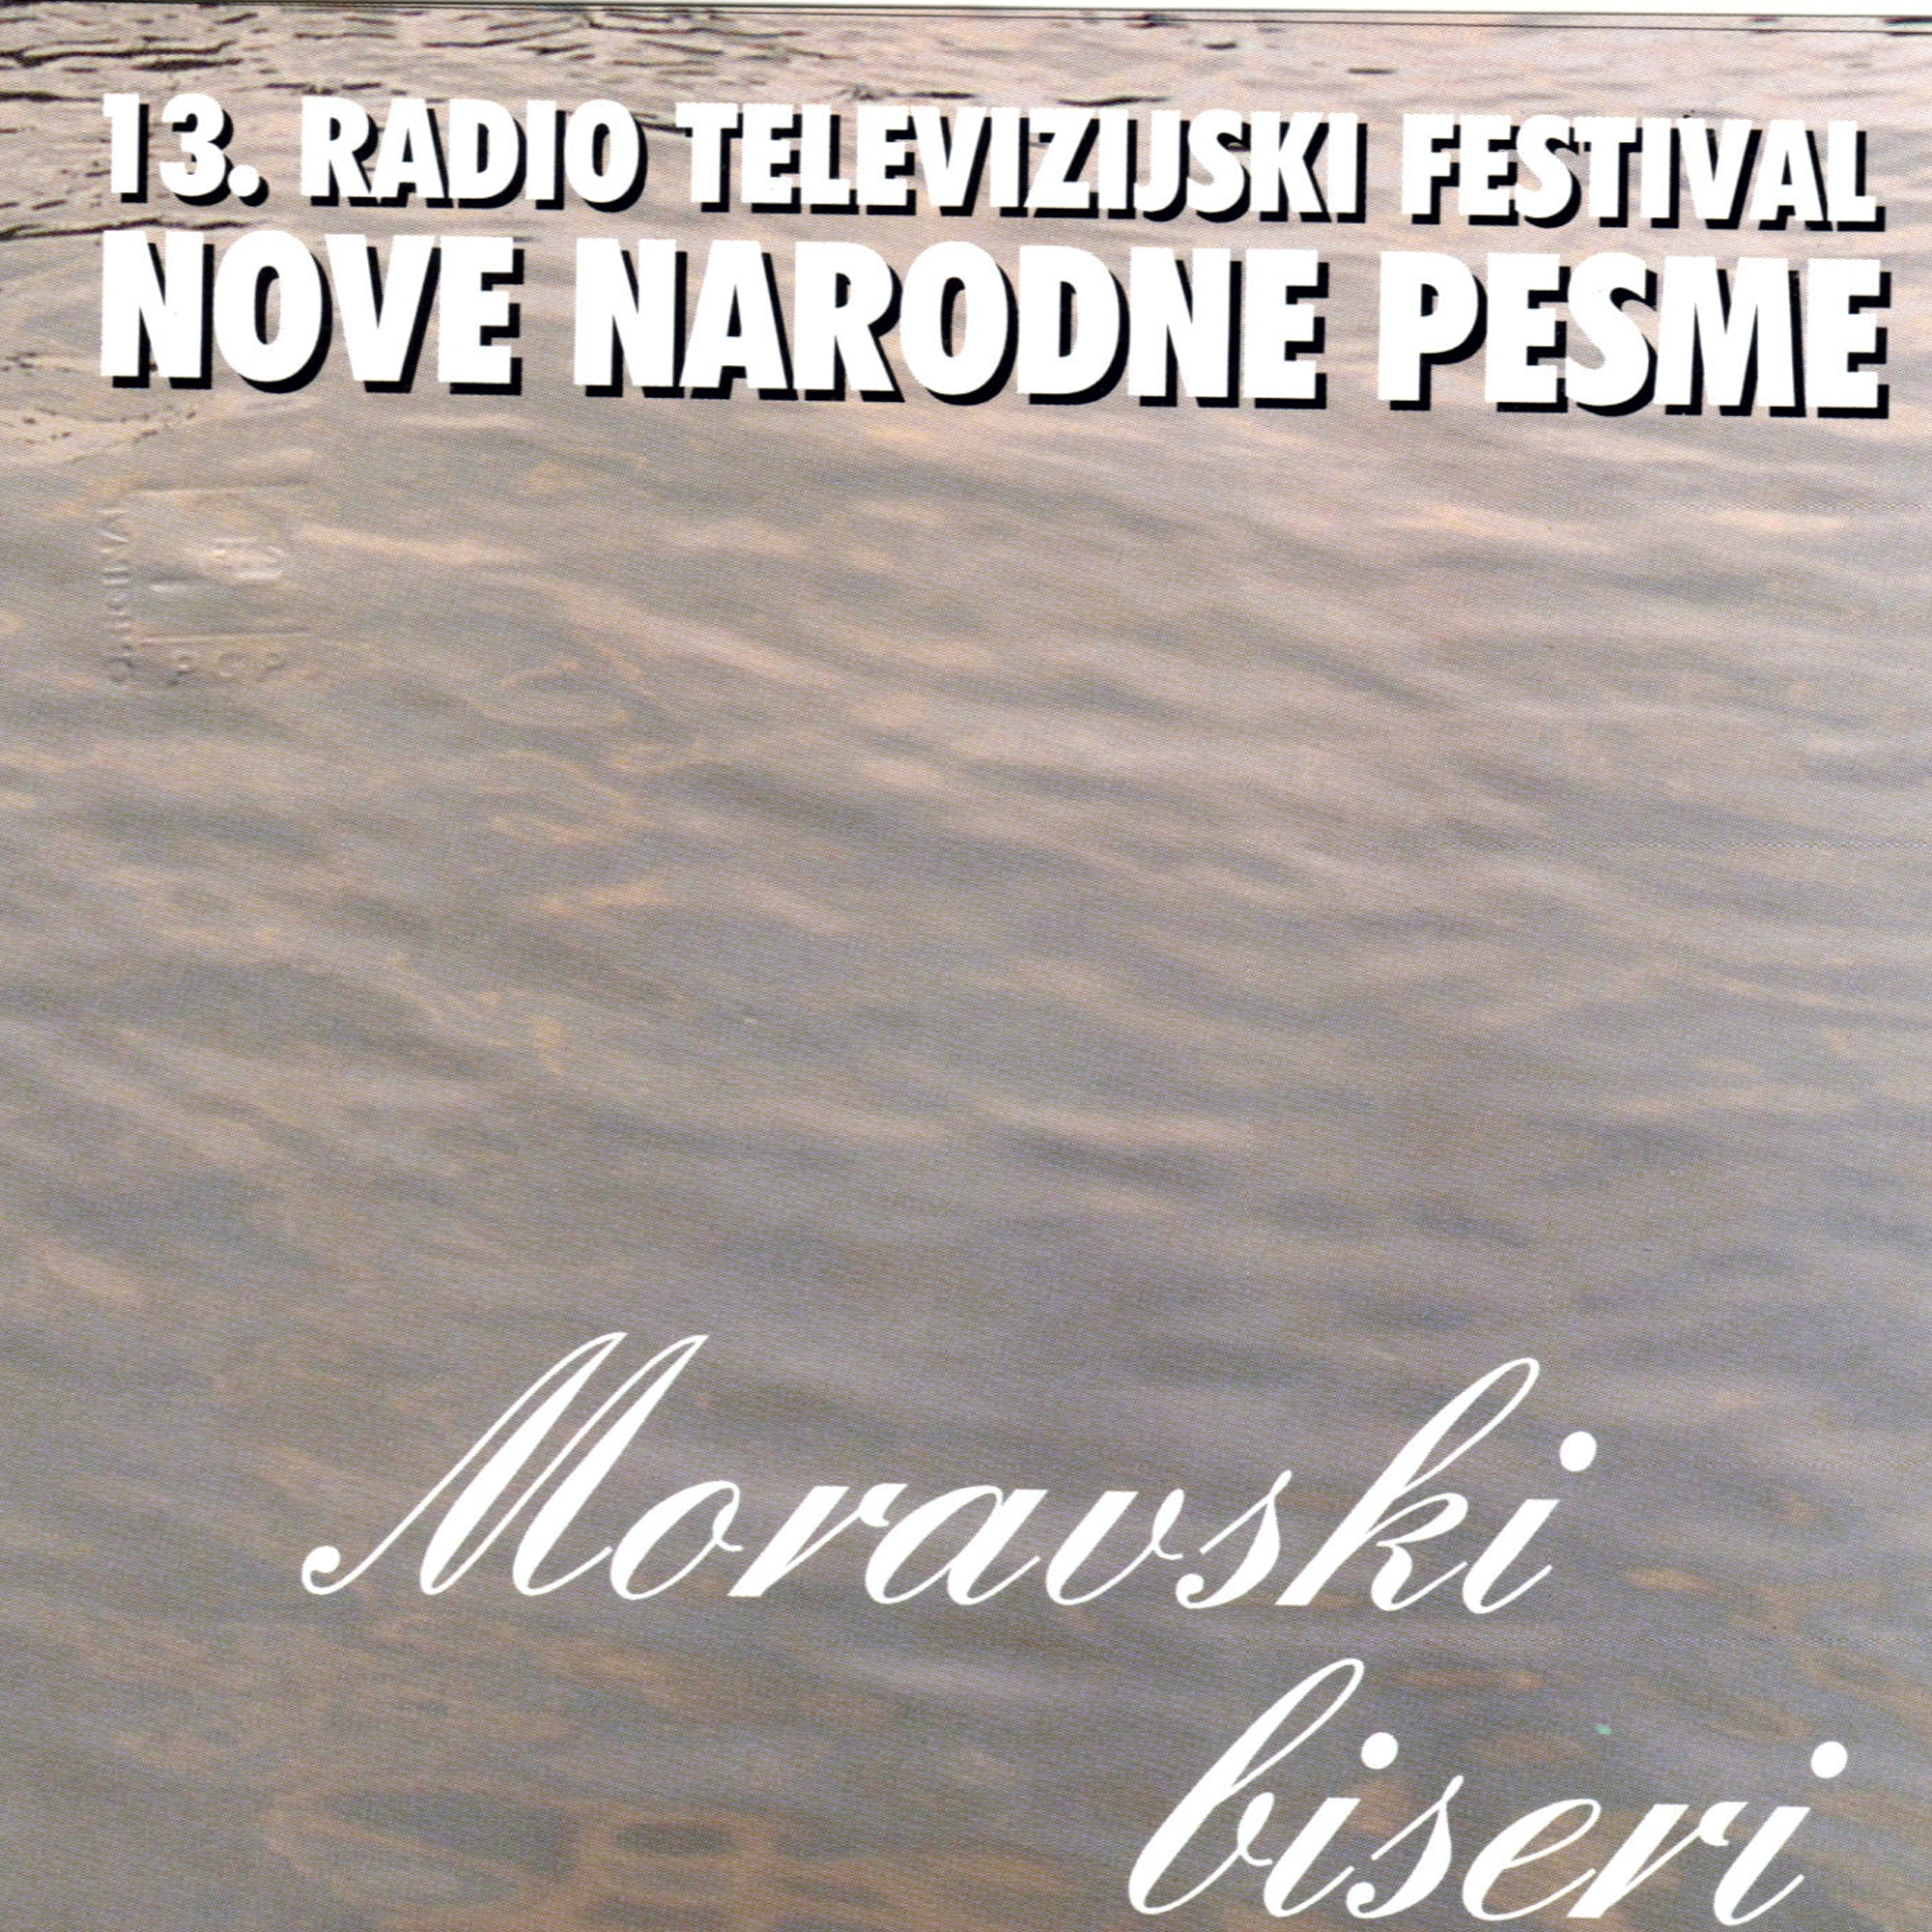 13. Radio Televizijski Festival Nove Narodne Pesme (Moravski Biseri)